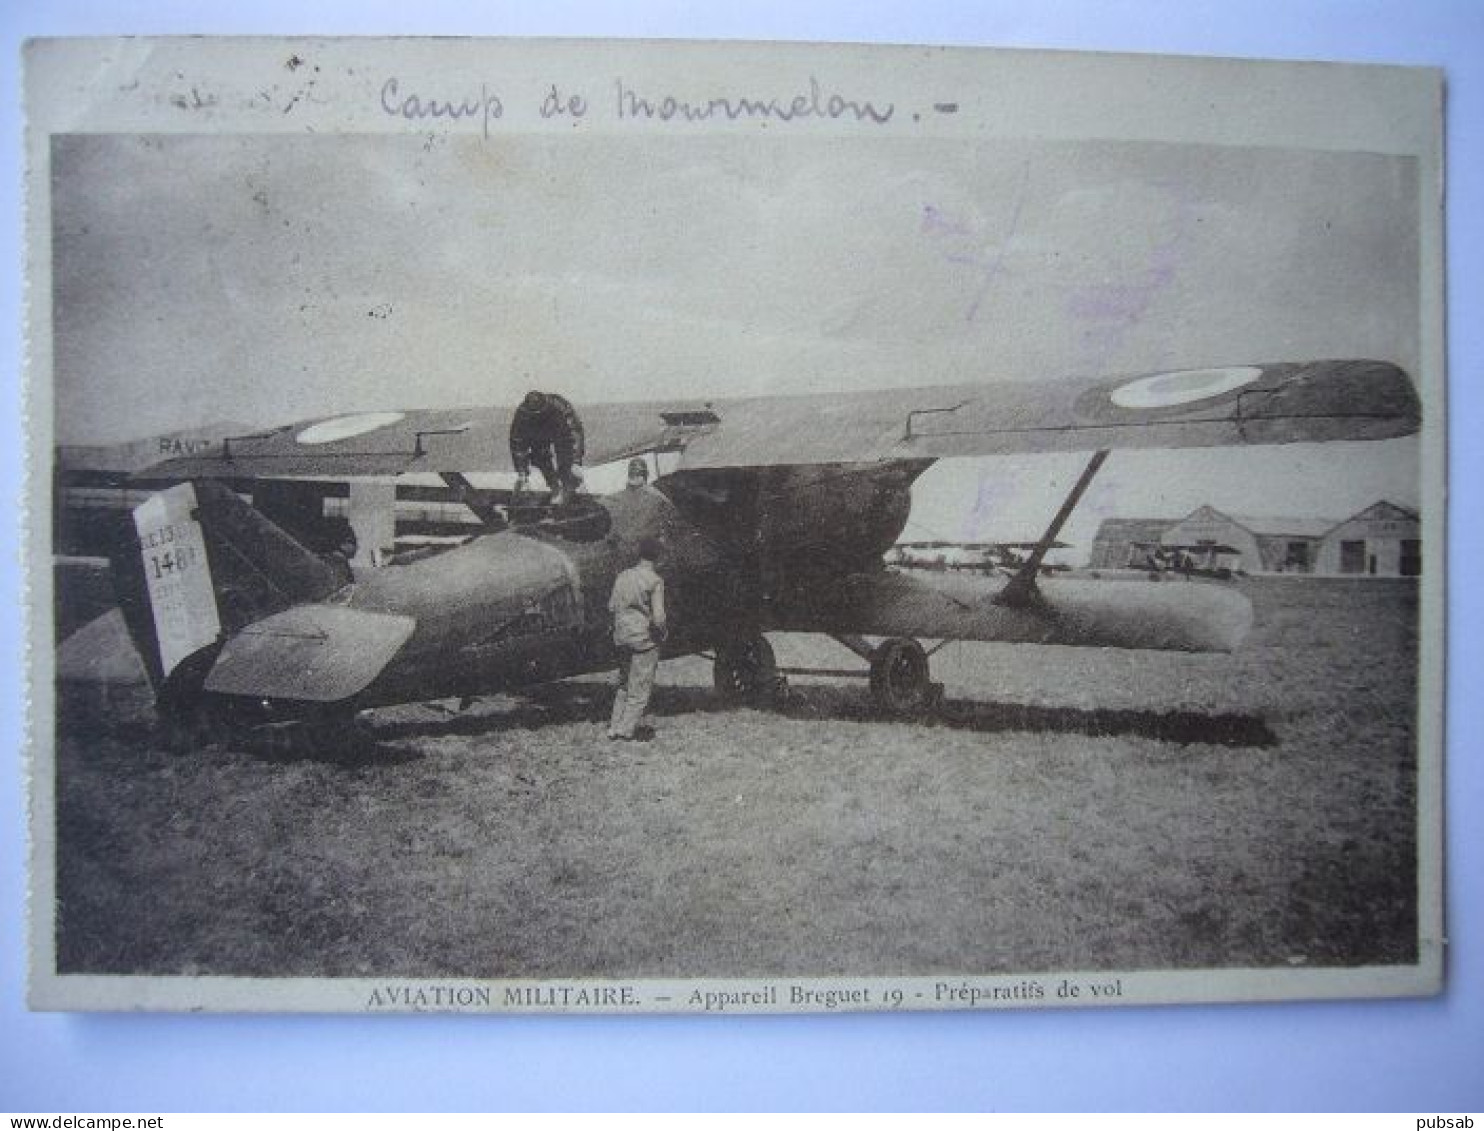 Avion / Airplane / Armée De L'Air Française / Bréguet 19 / Camp De Mourmelon - 1919-1938: Between Wars